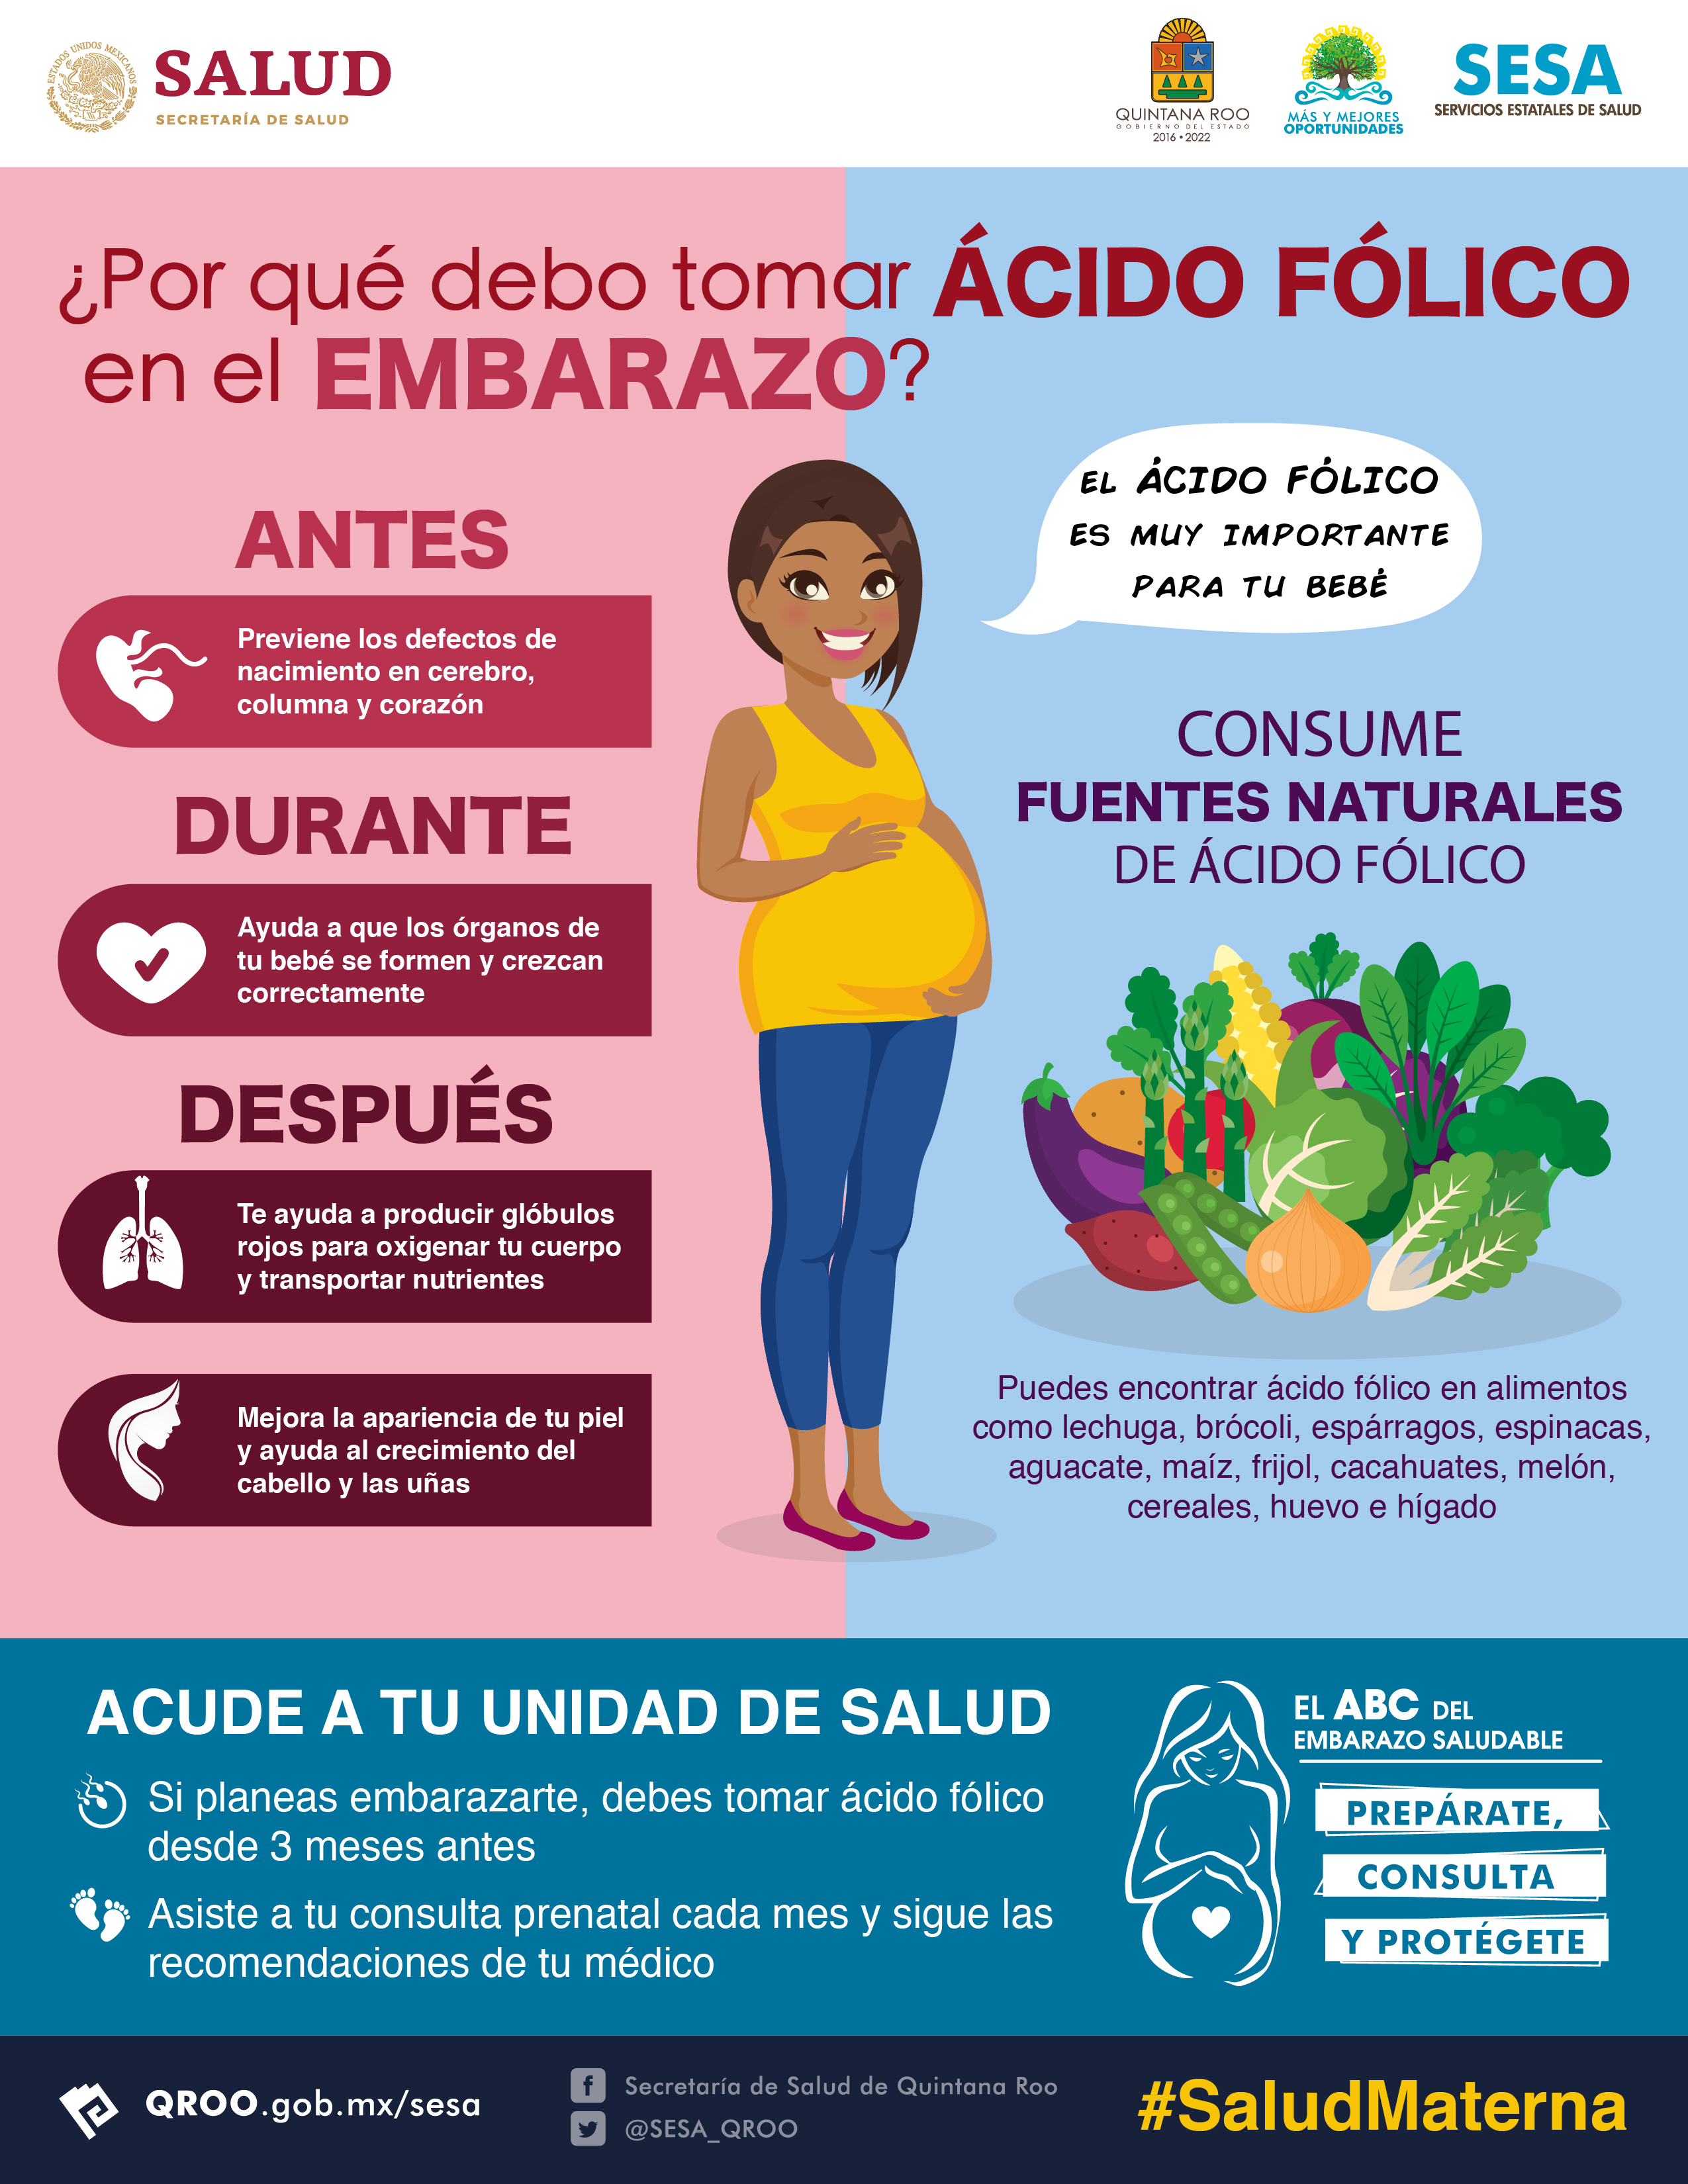 SESA Quintana Roo on X: ¿Por qué debo tomar ácido fólico en el embarazo?  #SaludMaterna  / X